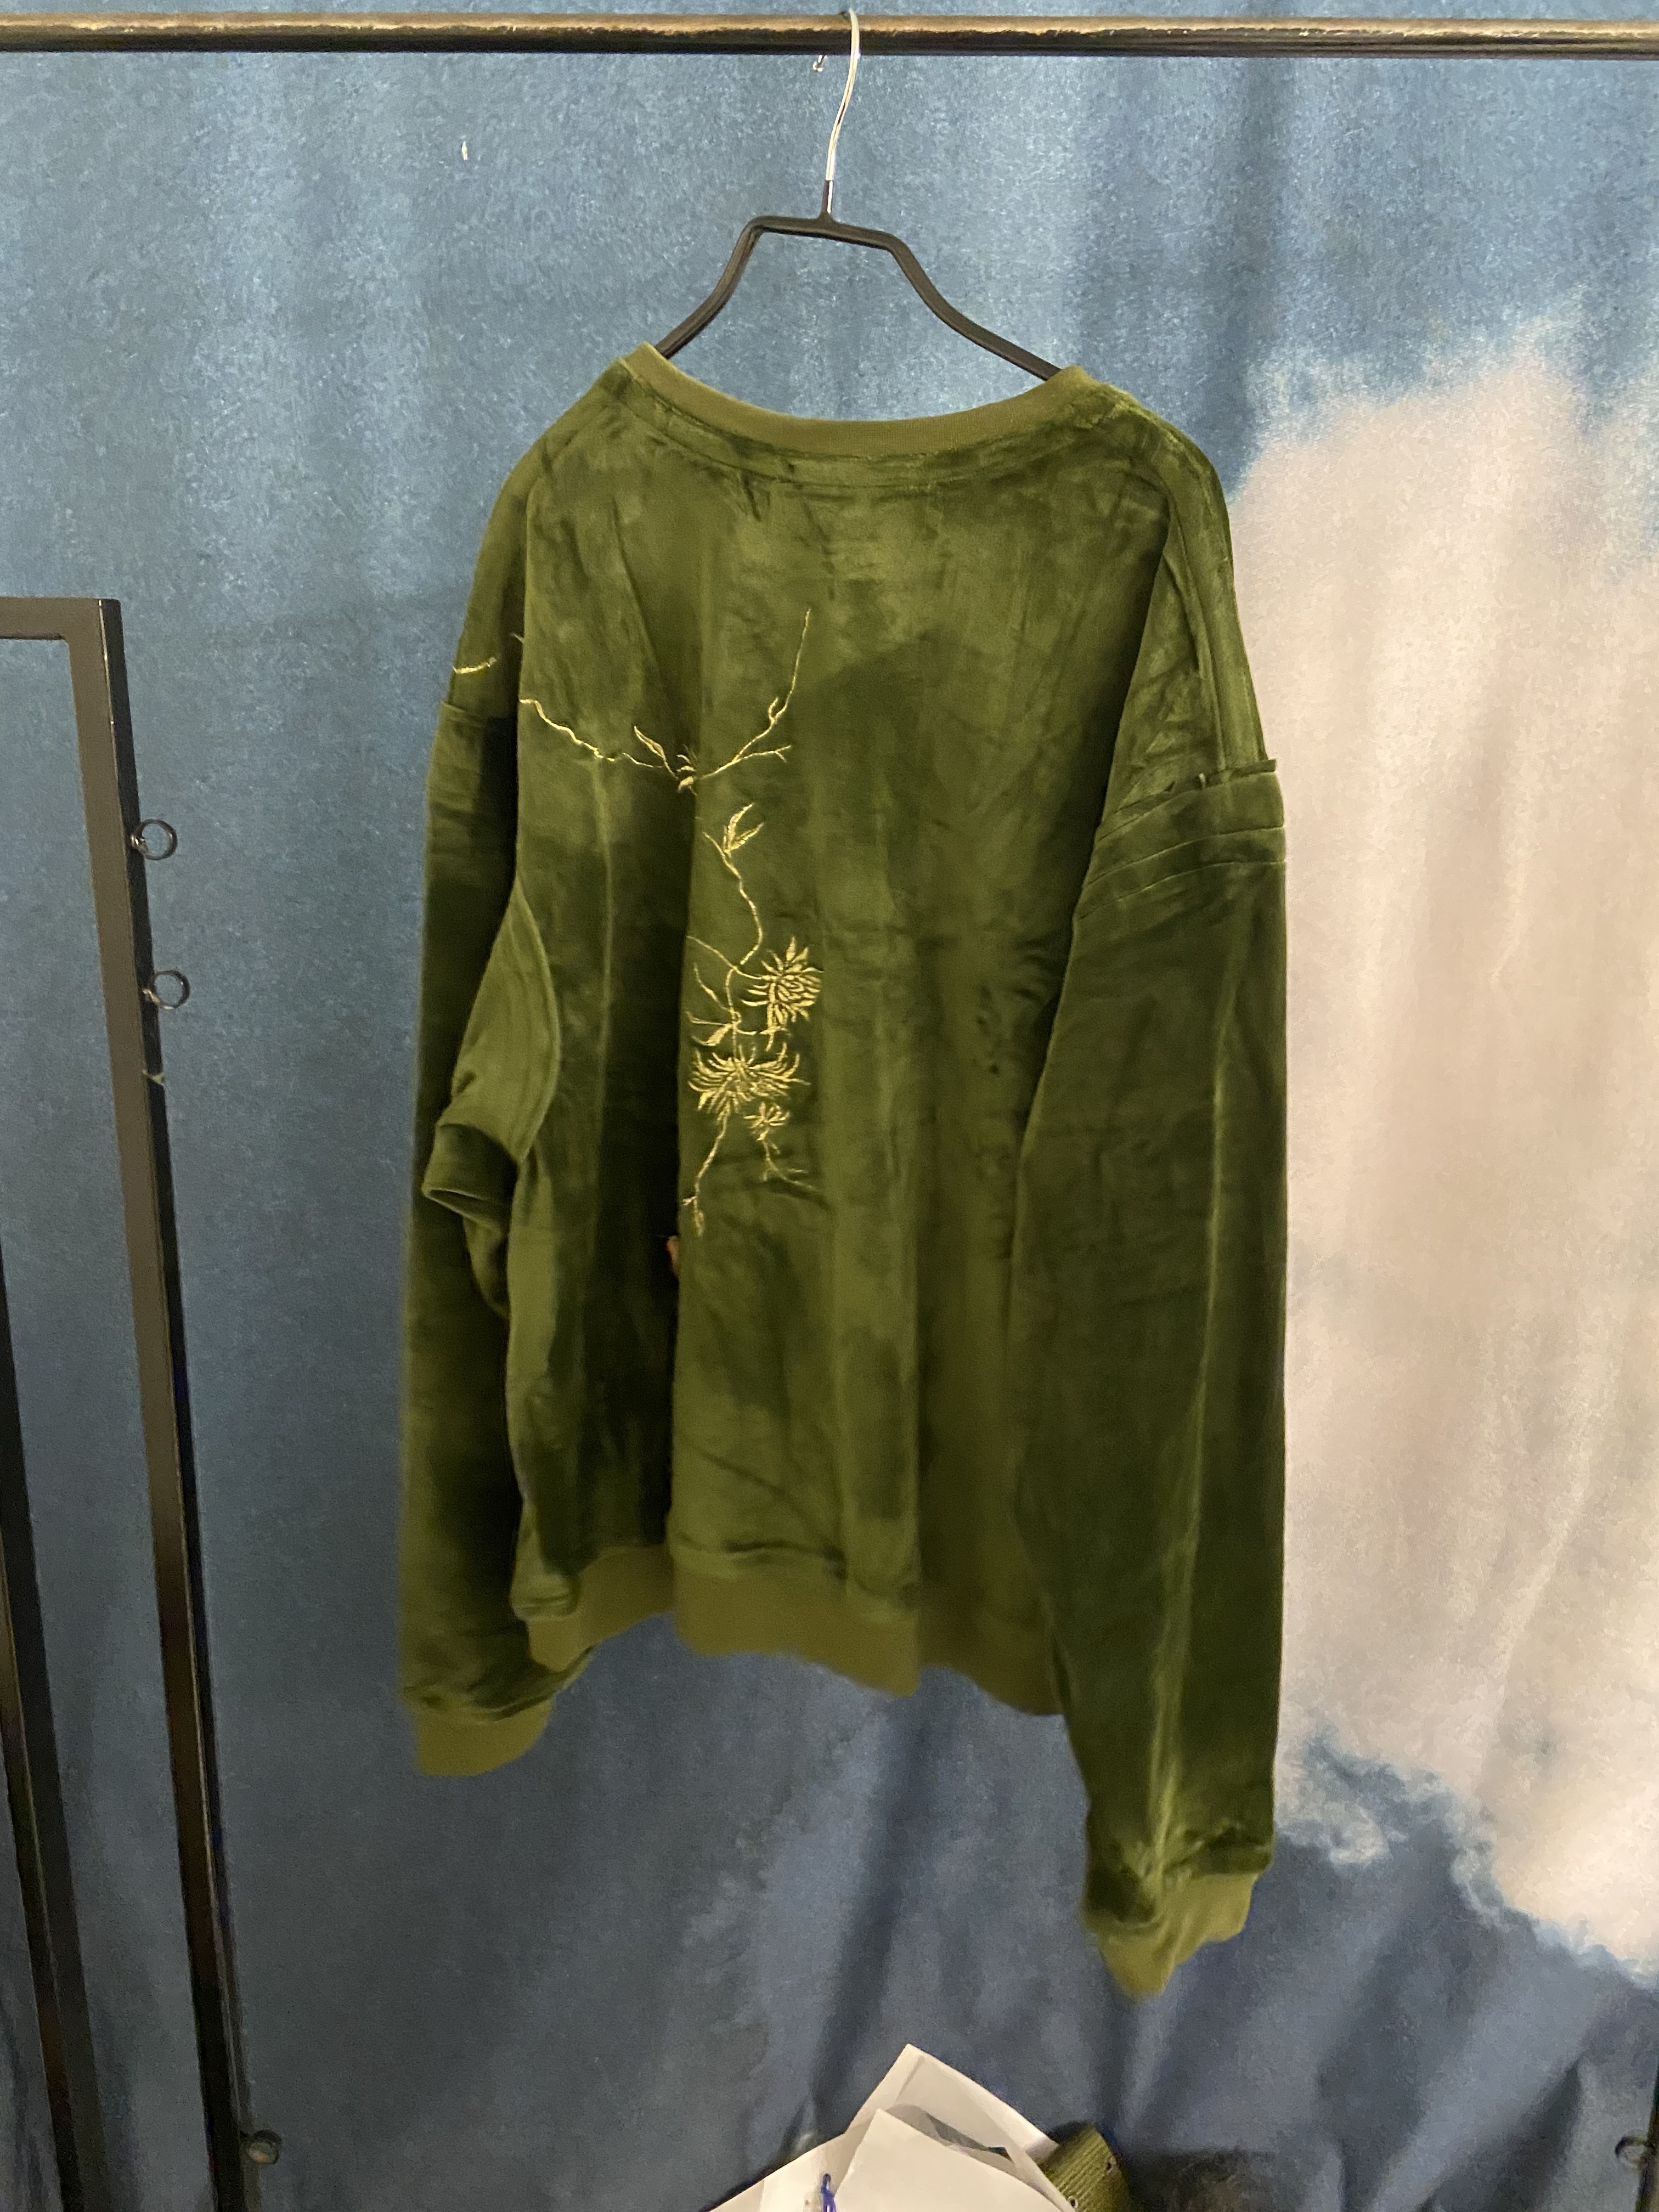 FW18 Velvet Green Sweater - 2